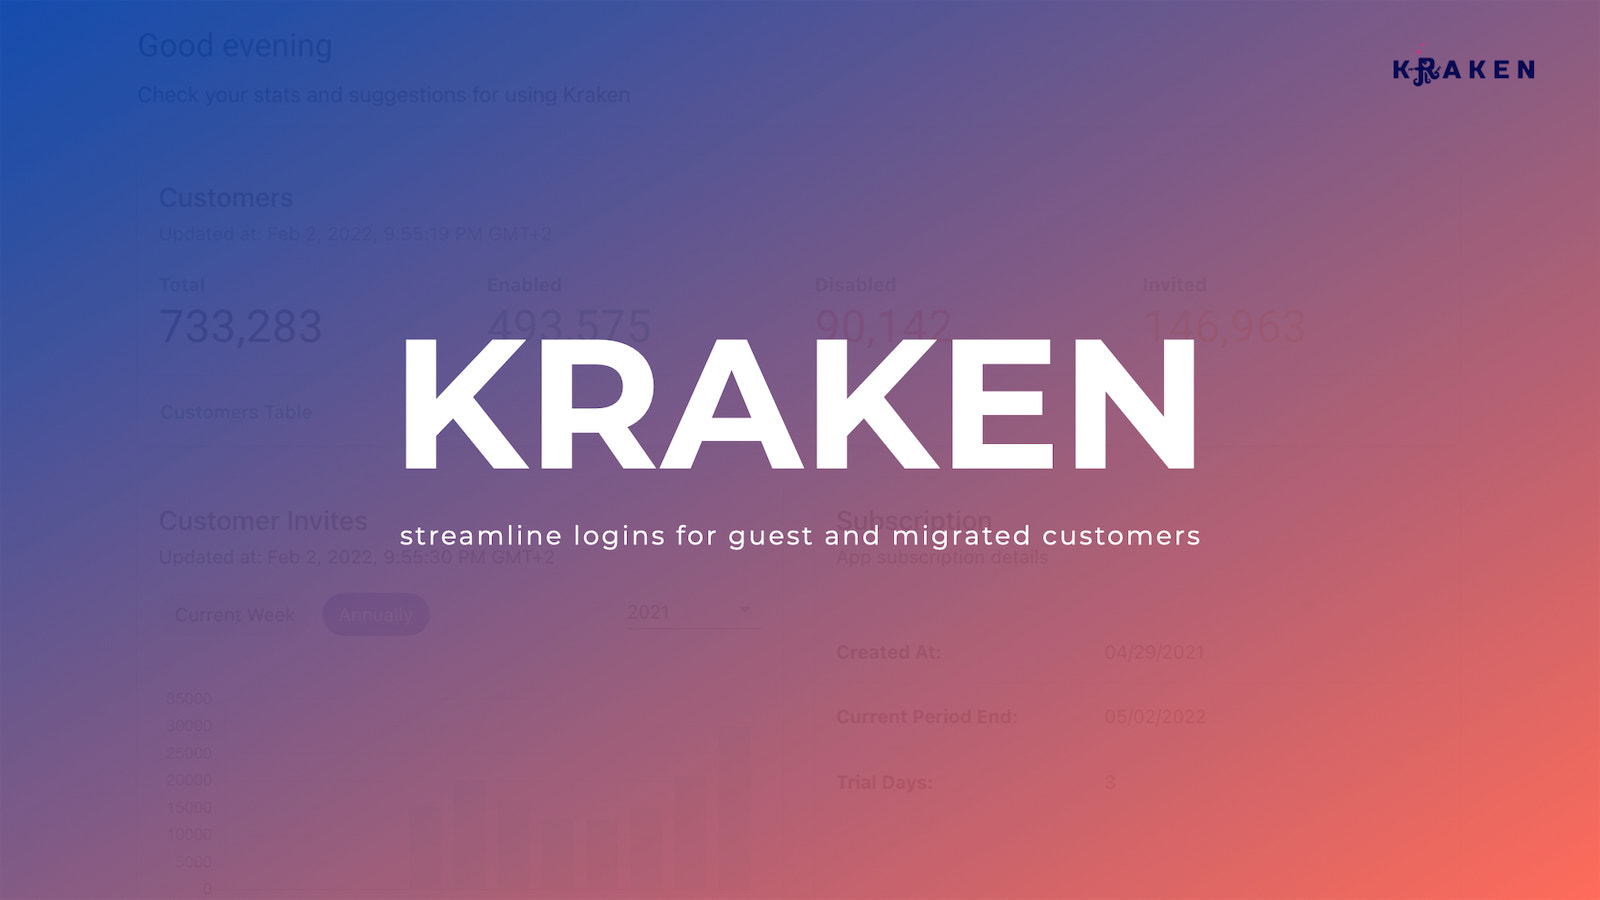 Forenkl logins for gæst og migrerede kunder - Kraken App